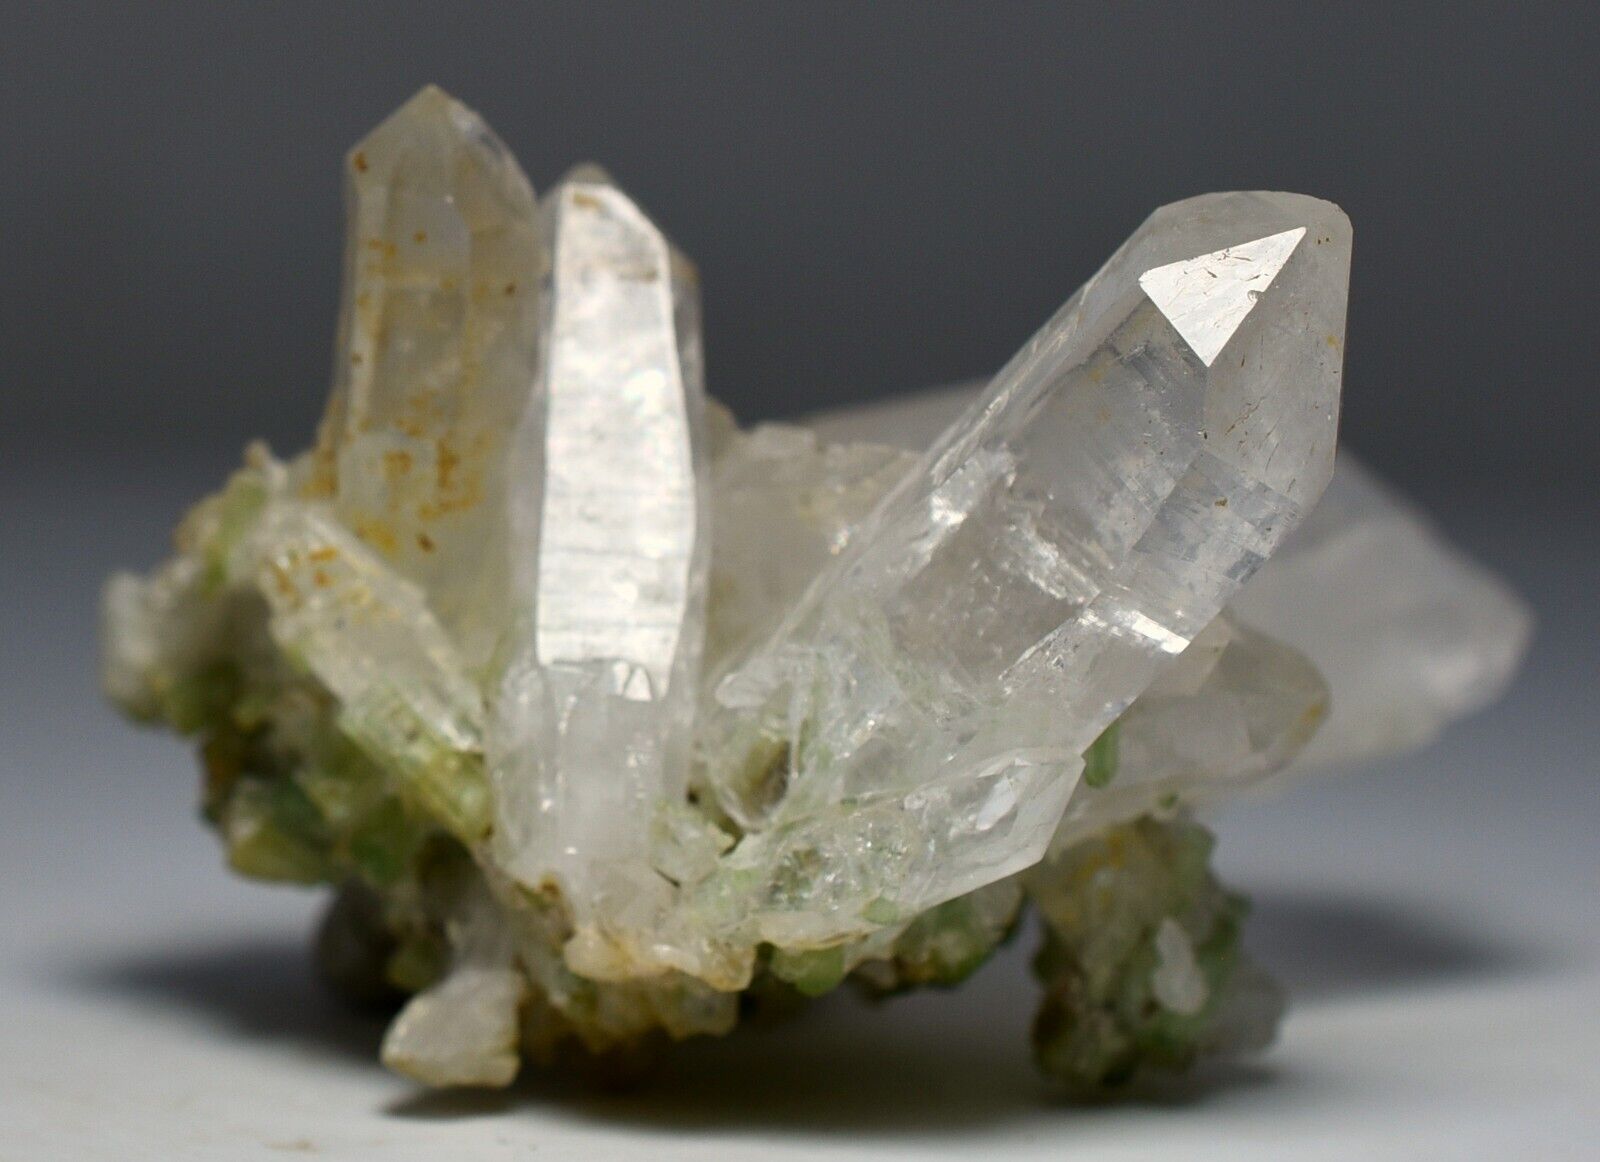 203 CT Very Unique Clear Quartz Combine Tourmaline Crystals Specimen Afghanistan